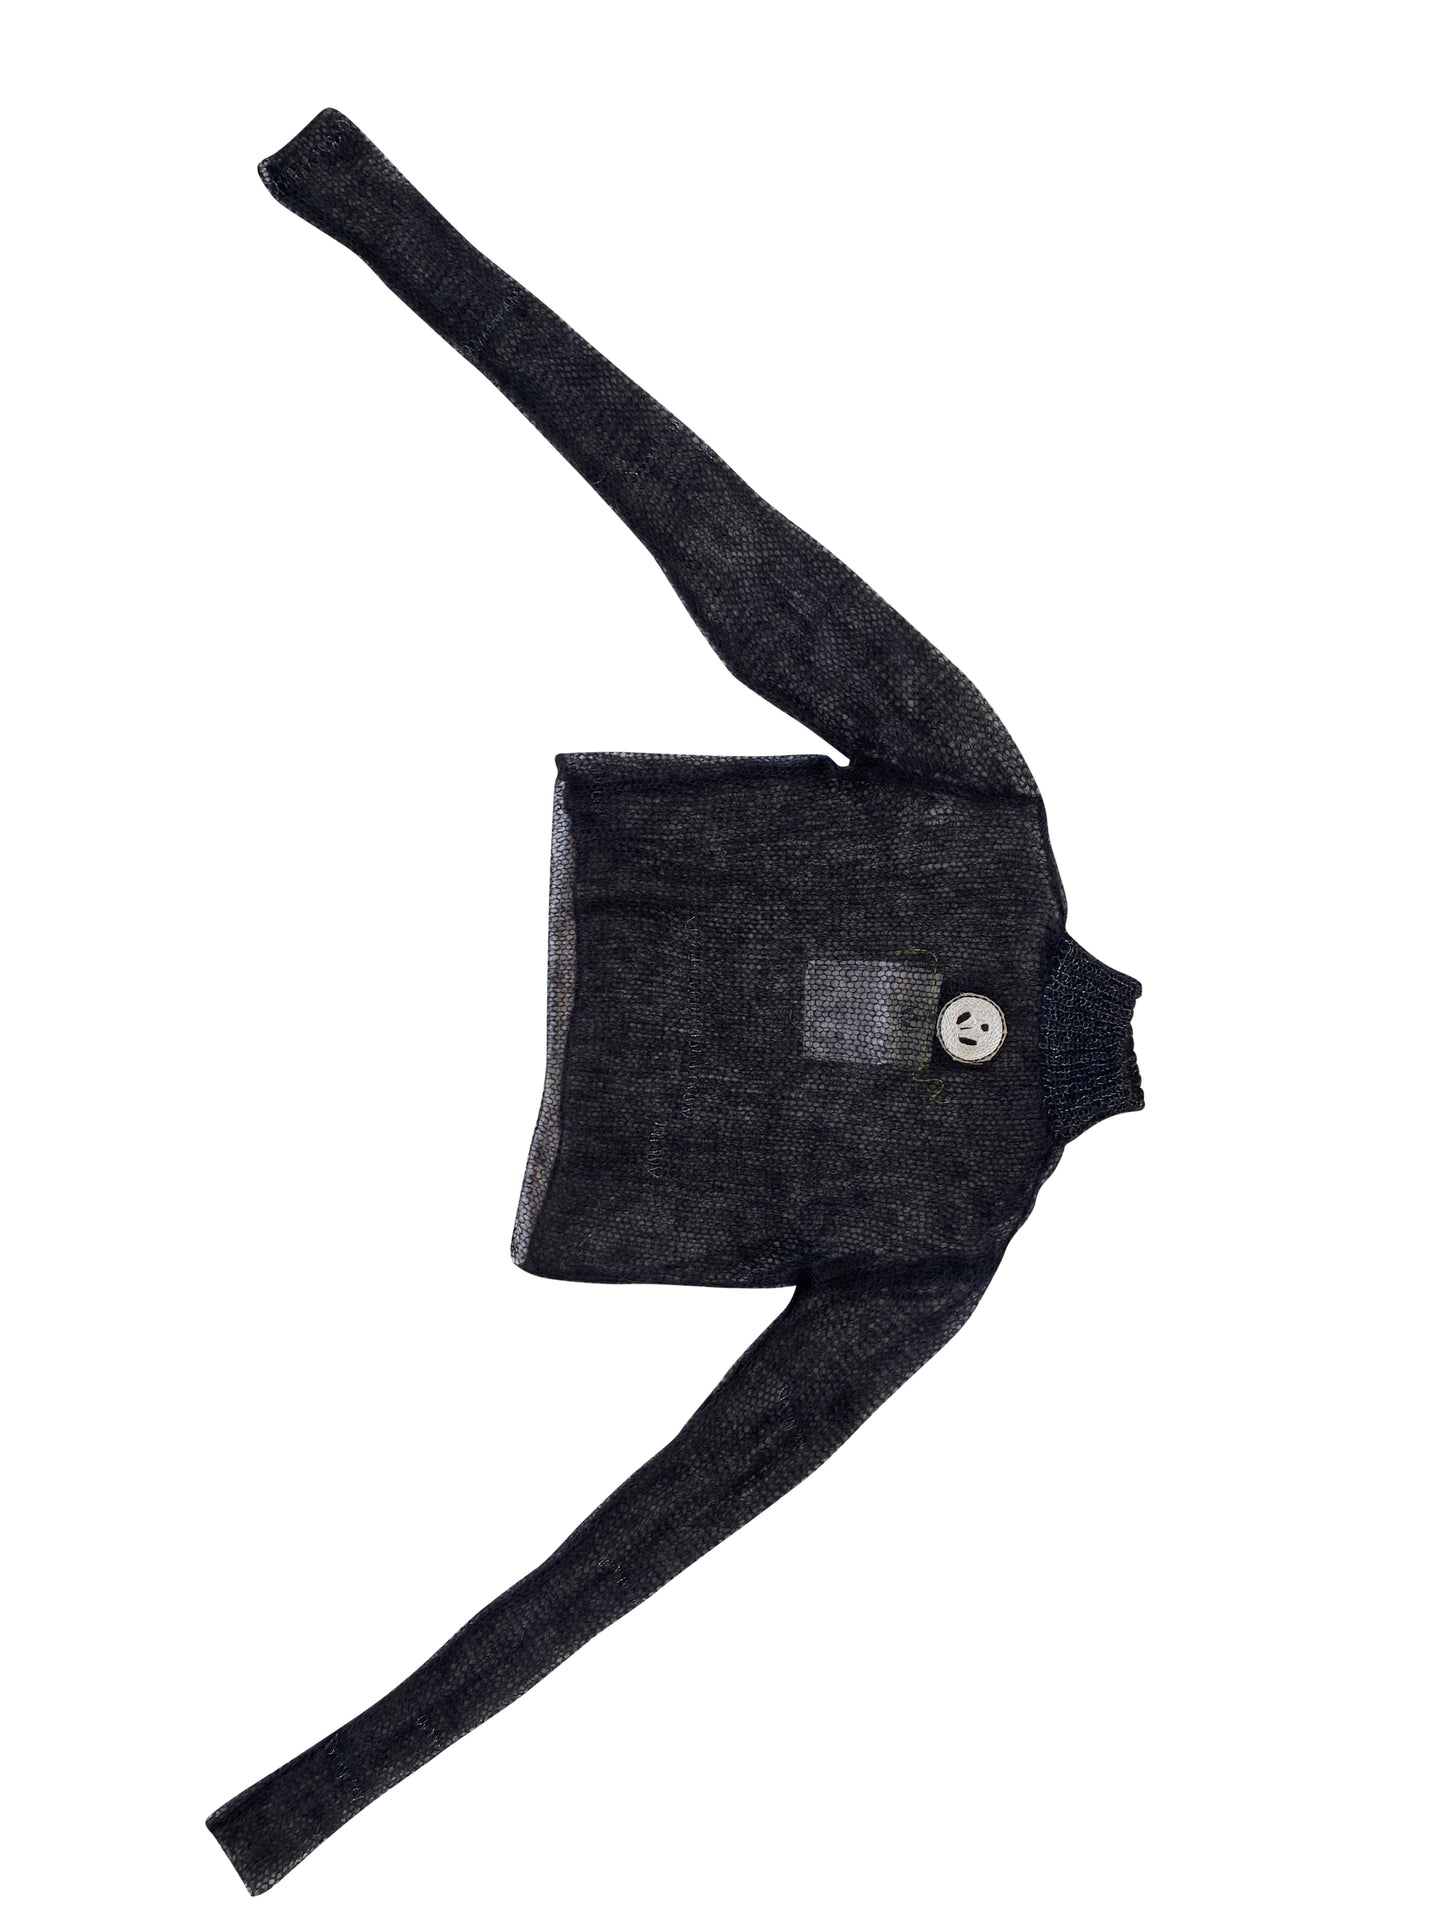 Black & Bronze Artisanal Mohair knitter turtleneck top